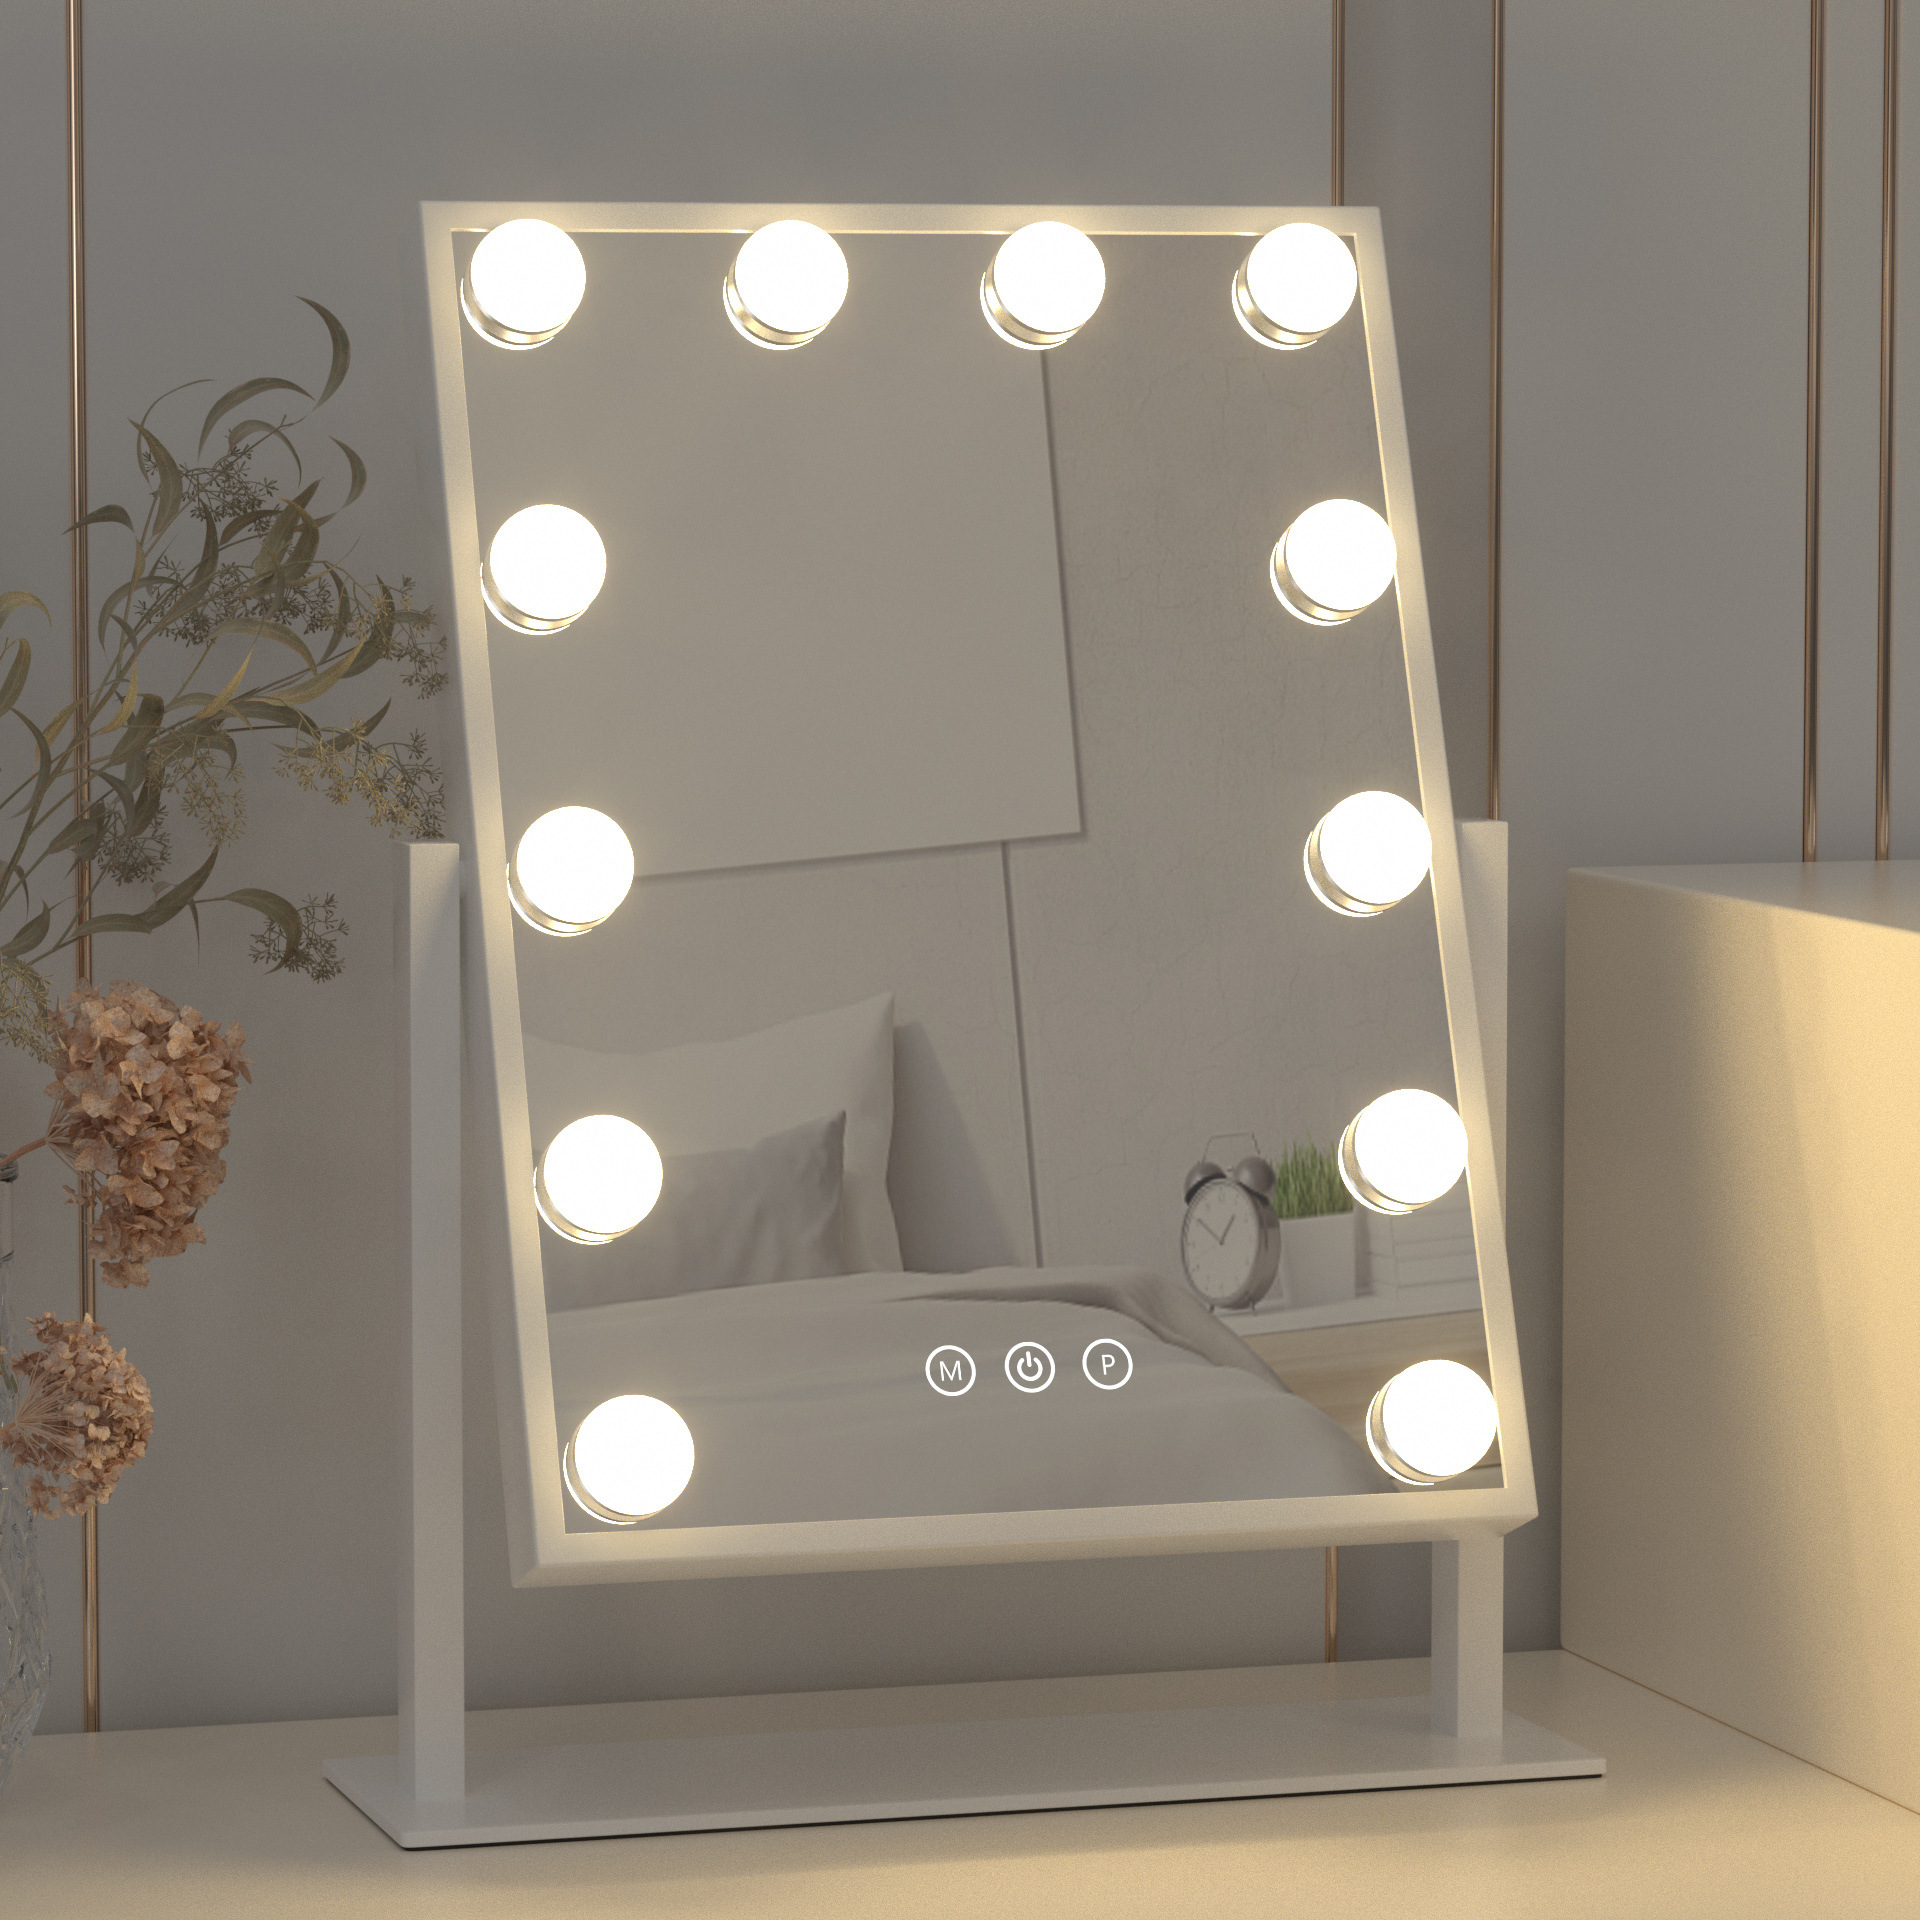 Hollywood Espejo de tocador con luces para escritorio de maquillaje, espejo  de maquillaje con 12 bombillas regulables, espejo de aumento desmontable